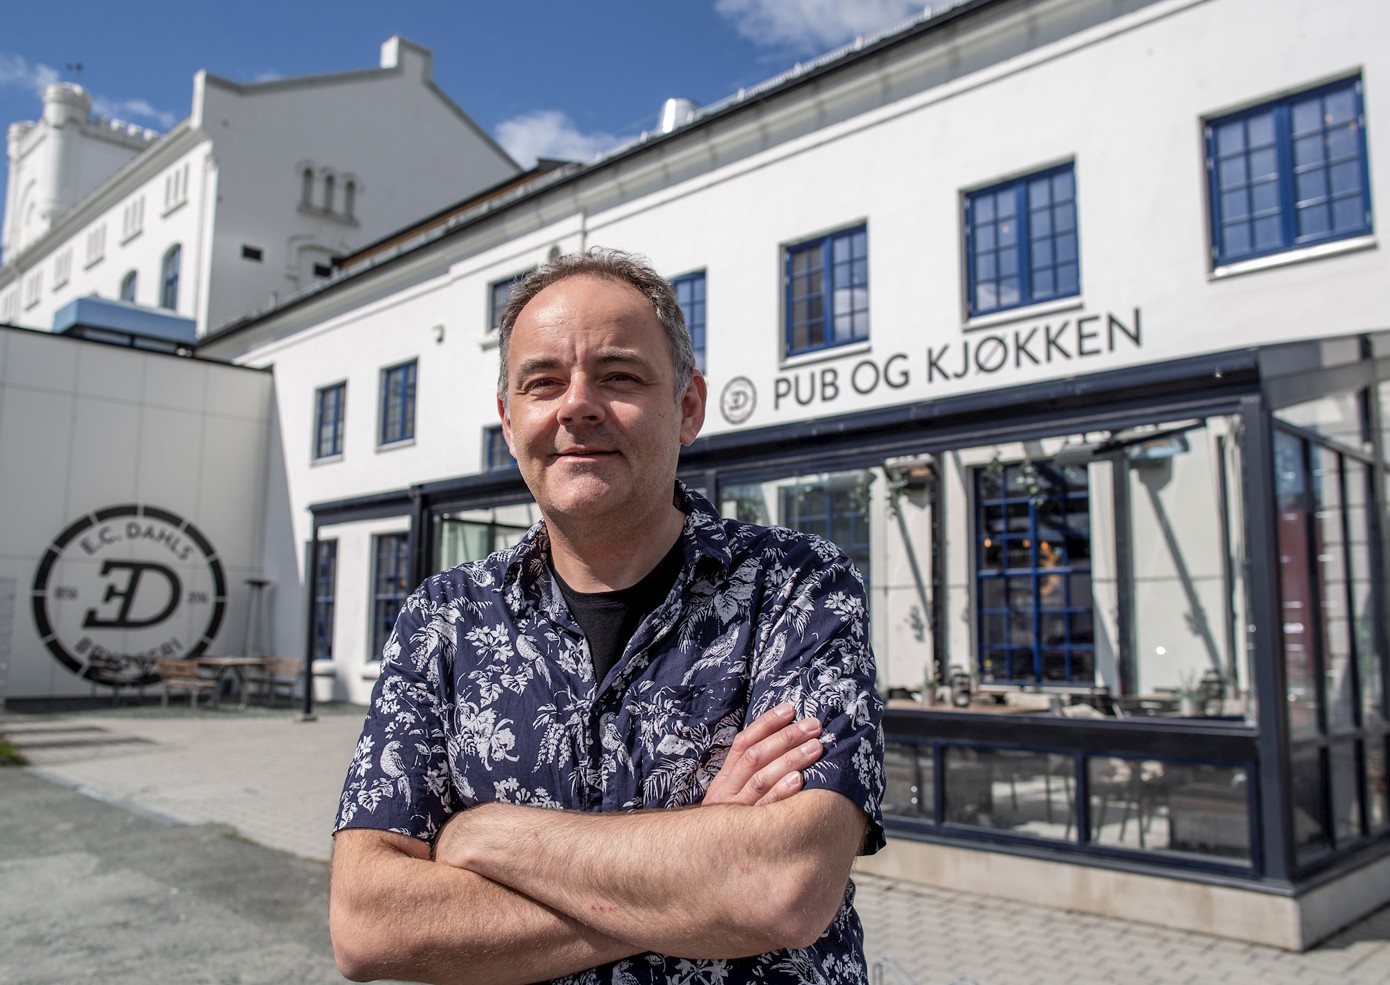 Alexander Skjefte, daglig leder ved E.C. Dahls pub og kjøkken i Trondheim tror flere har blitt bevisst serveringsstedene i sitt nærområde. (Foto: Anne Reisch)